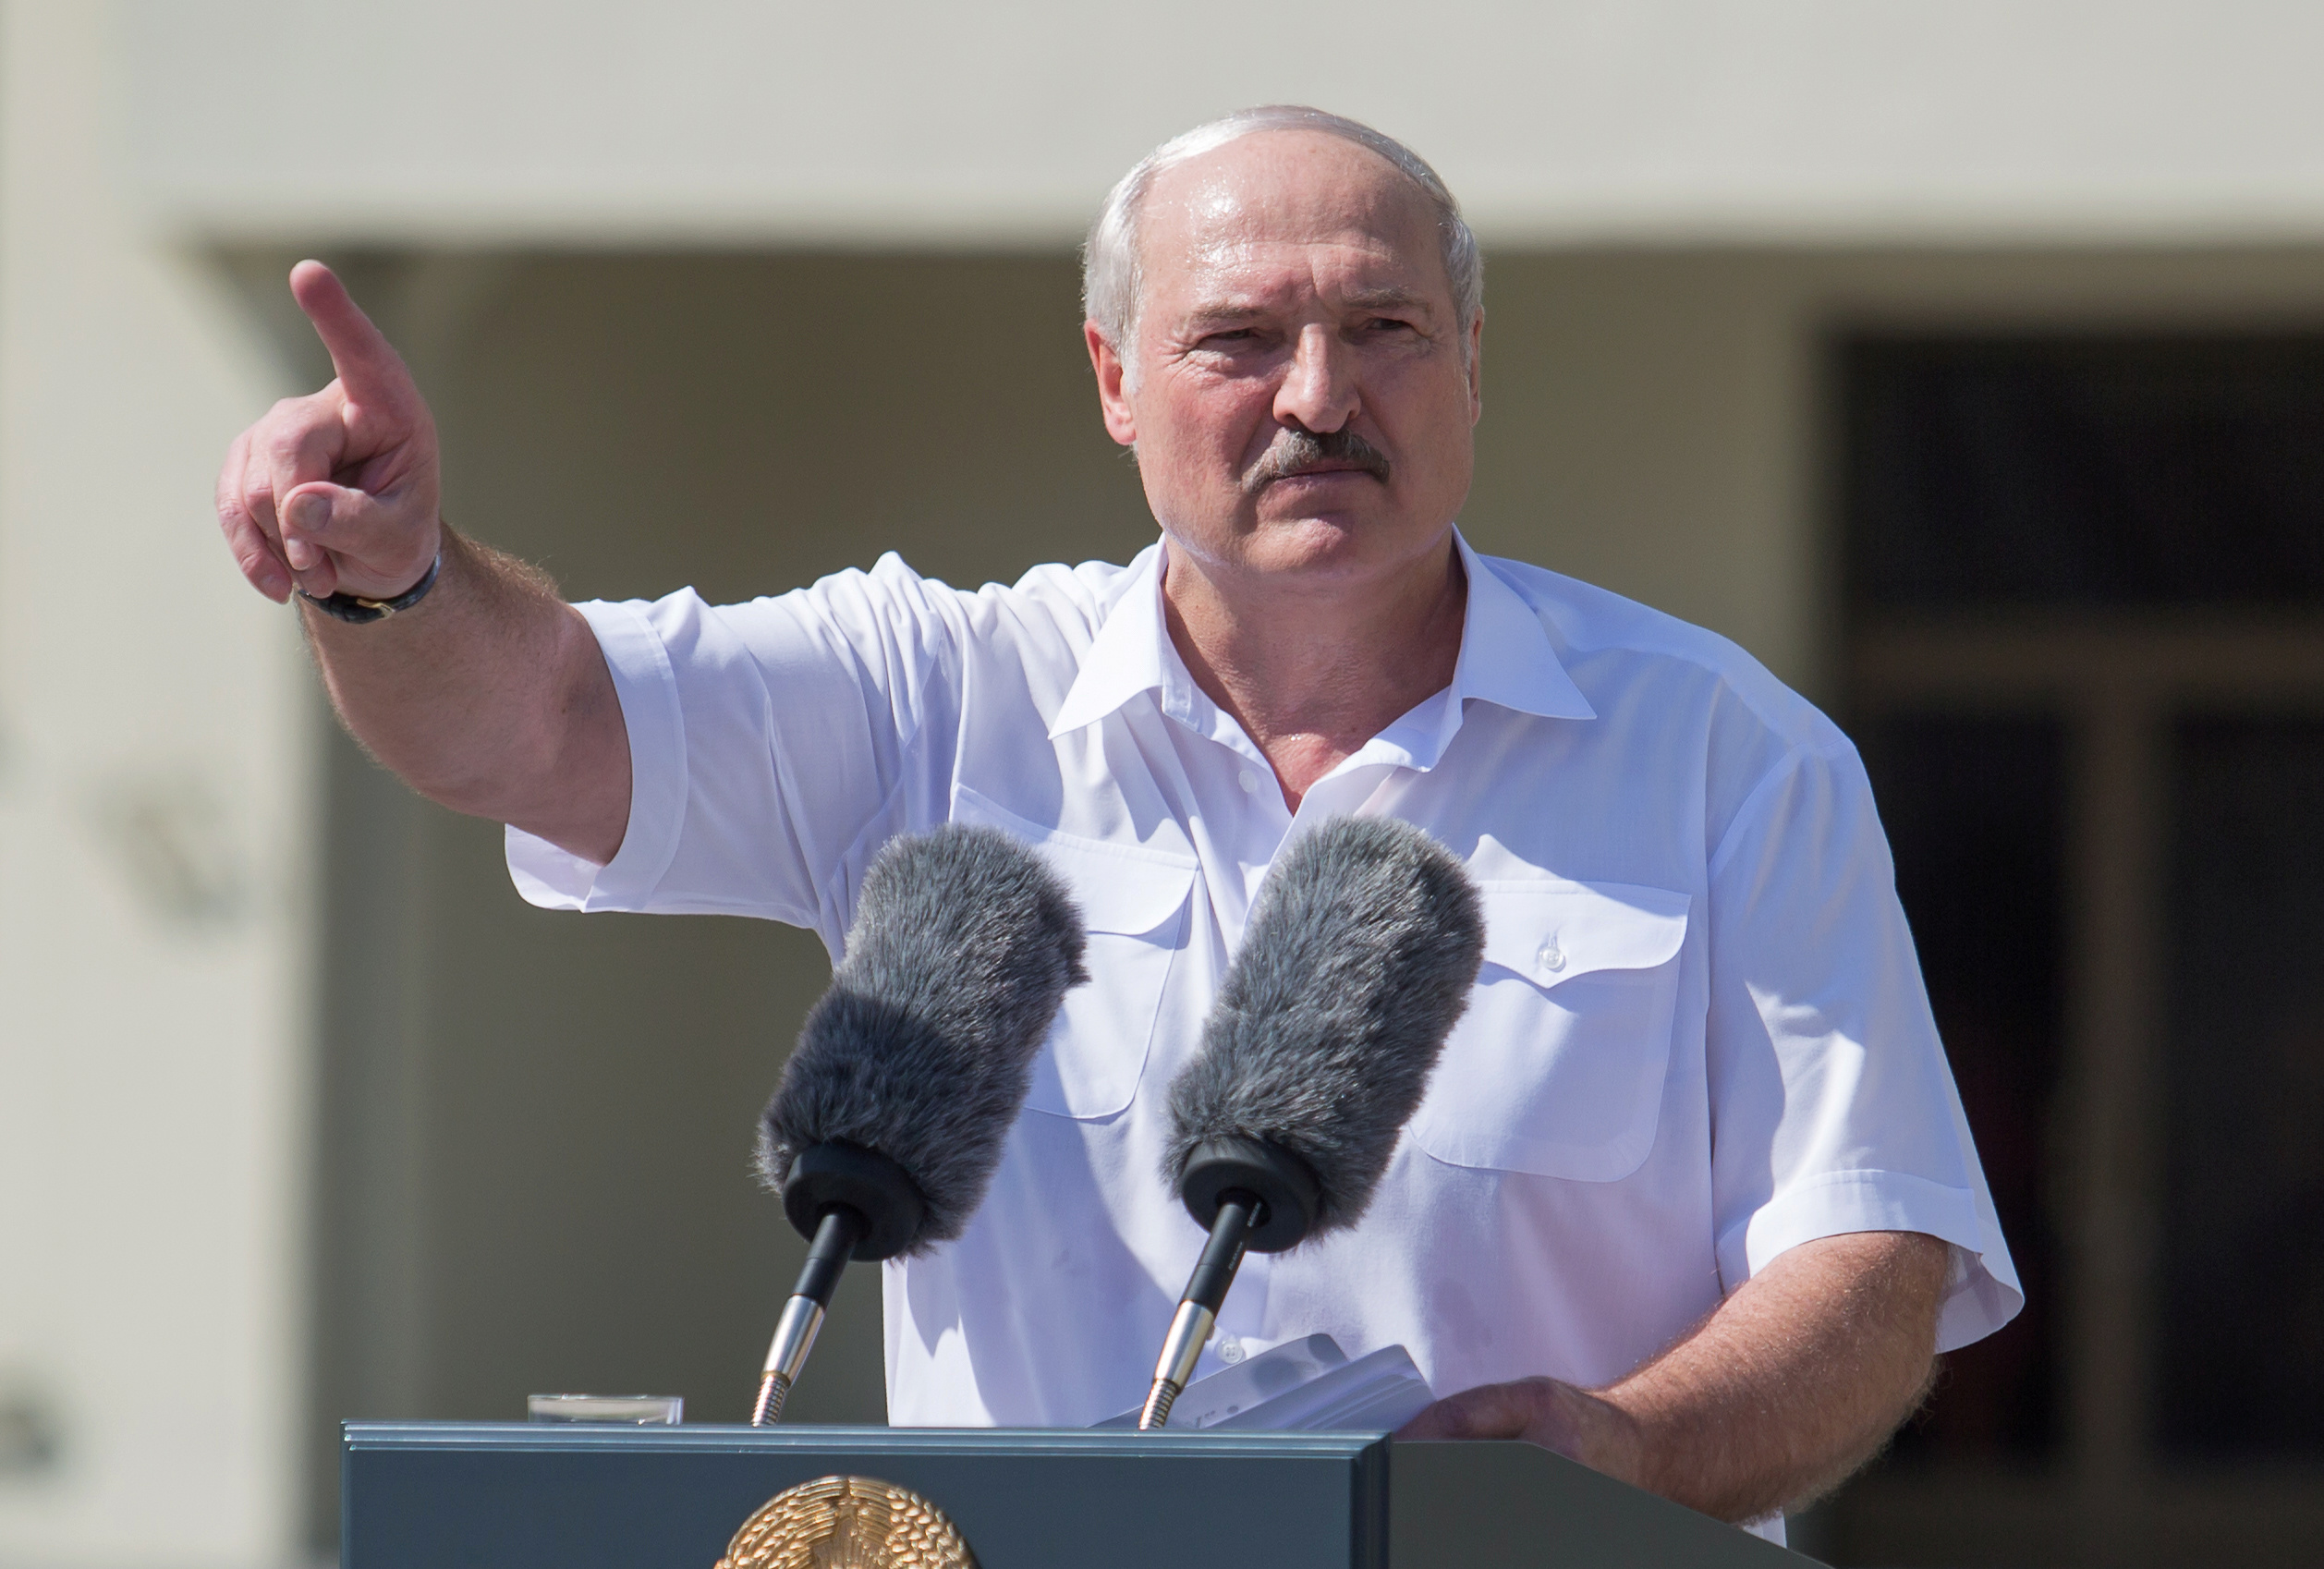 Lukashenko amenazó con despedir a los maestros que apoyen las protestas opositoras